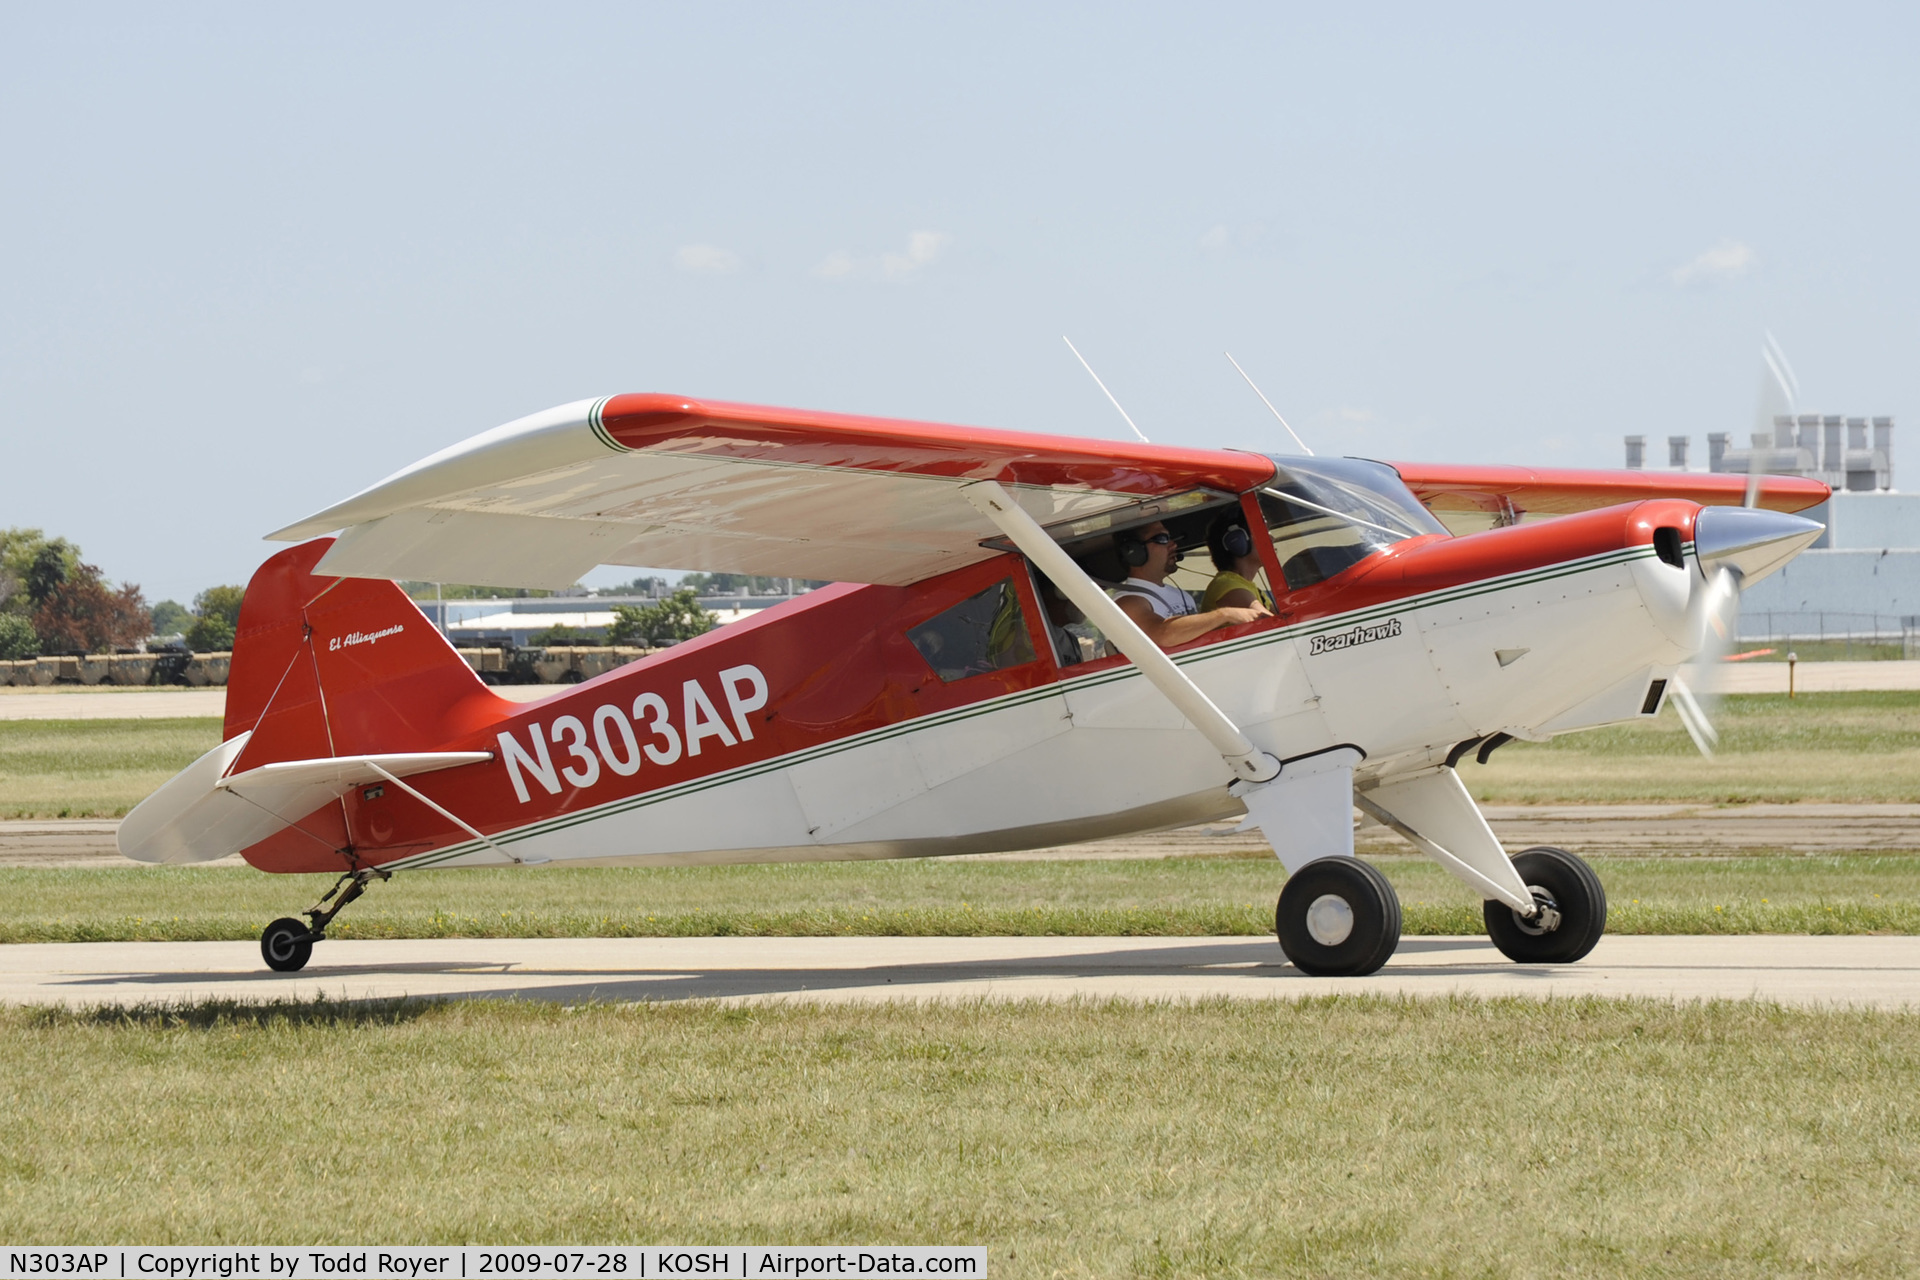 N303AP, 2003 Avipro Bearhawk C/N 02-01/02-444, Taxi for departure